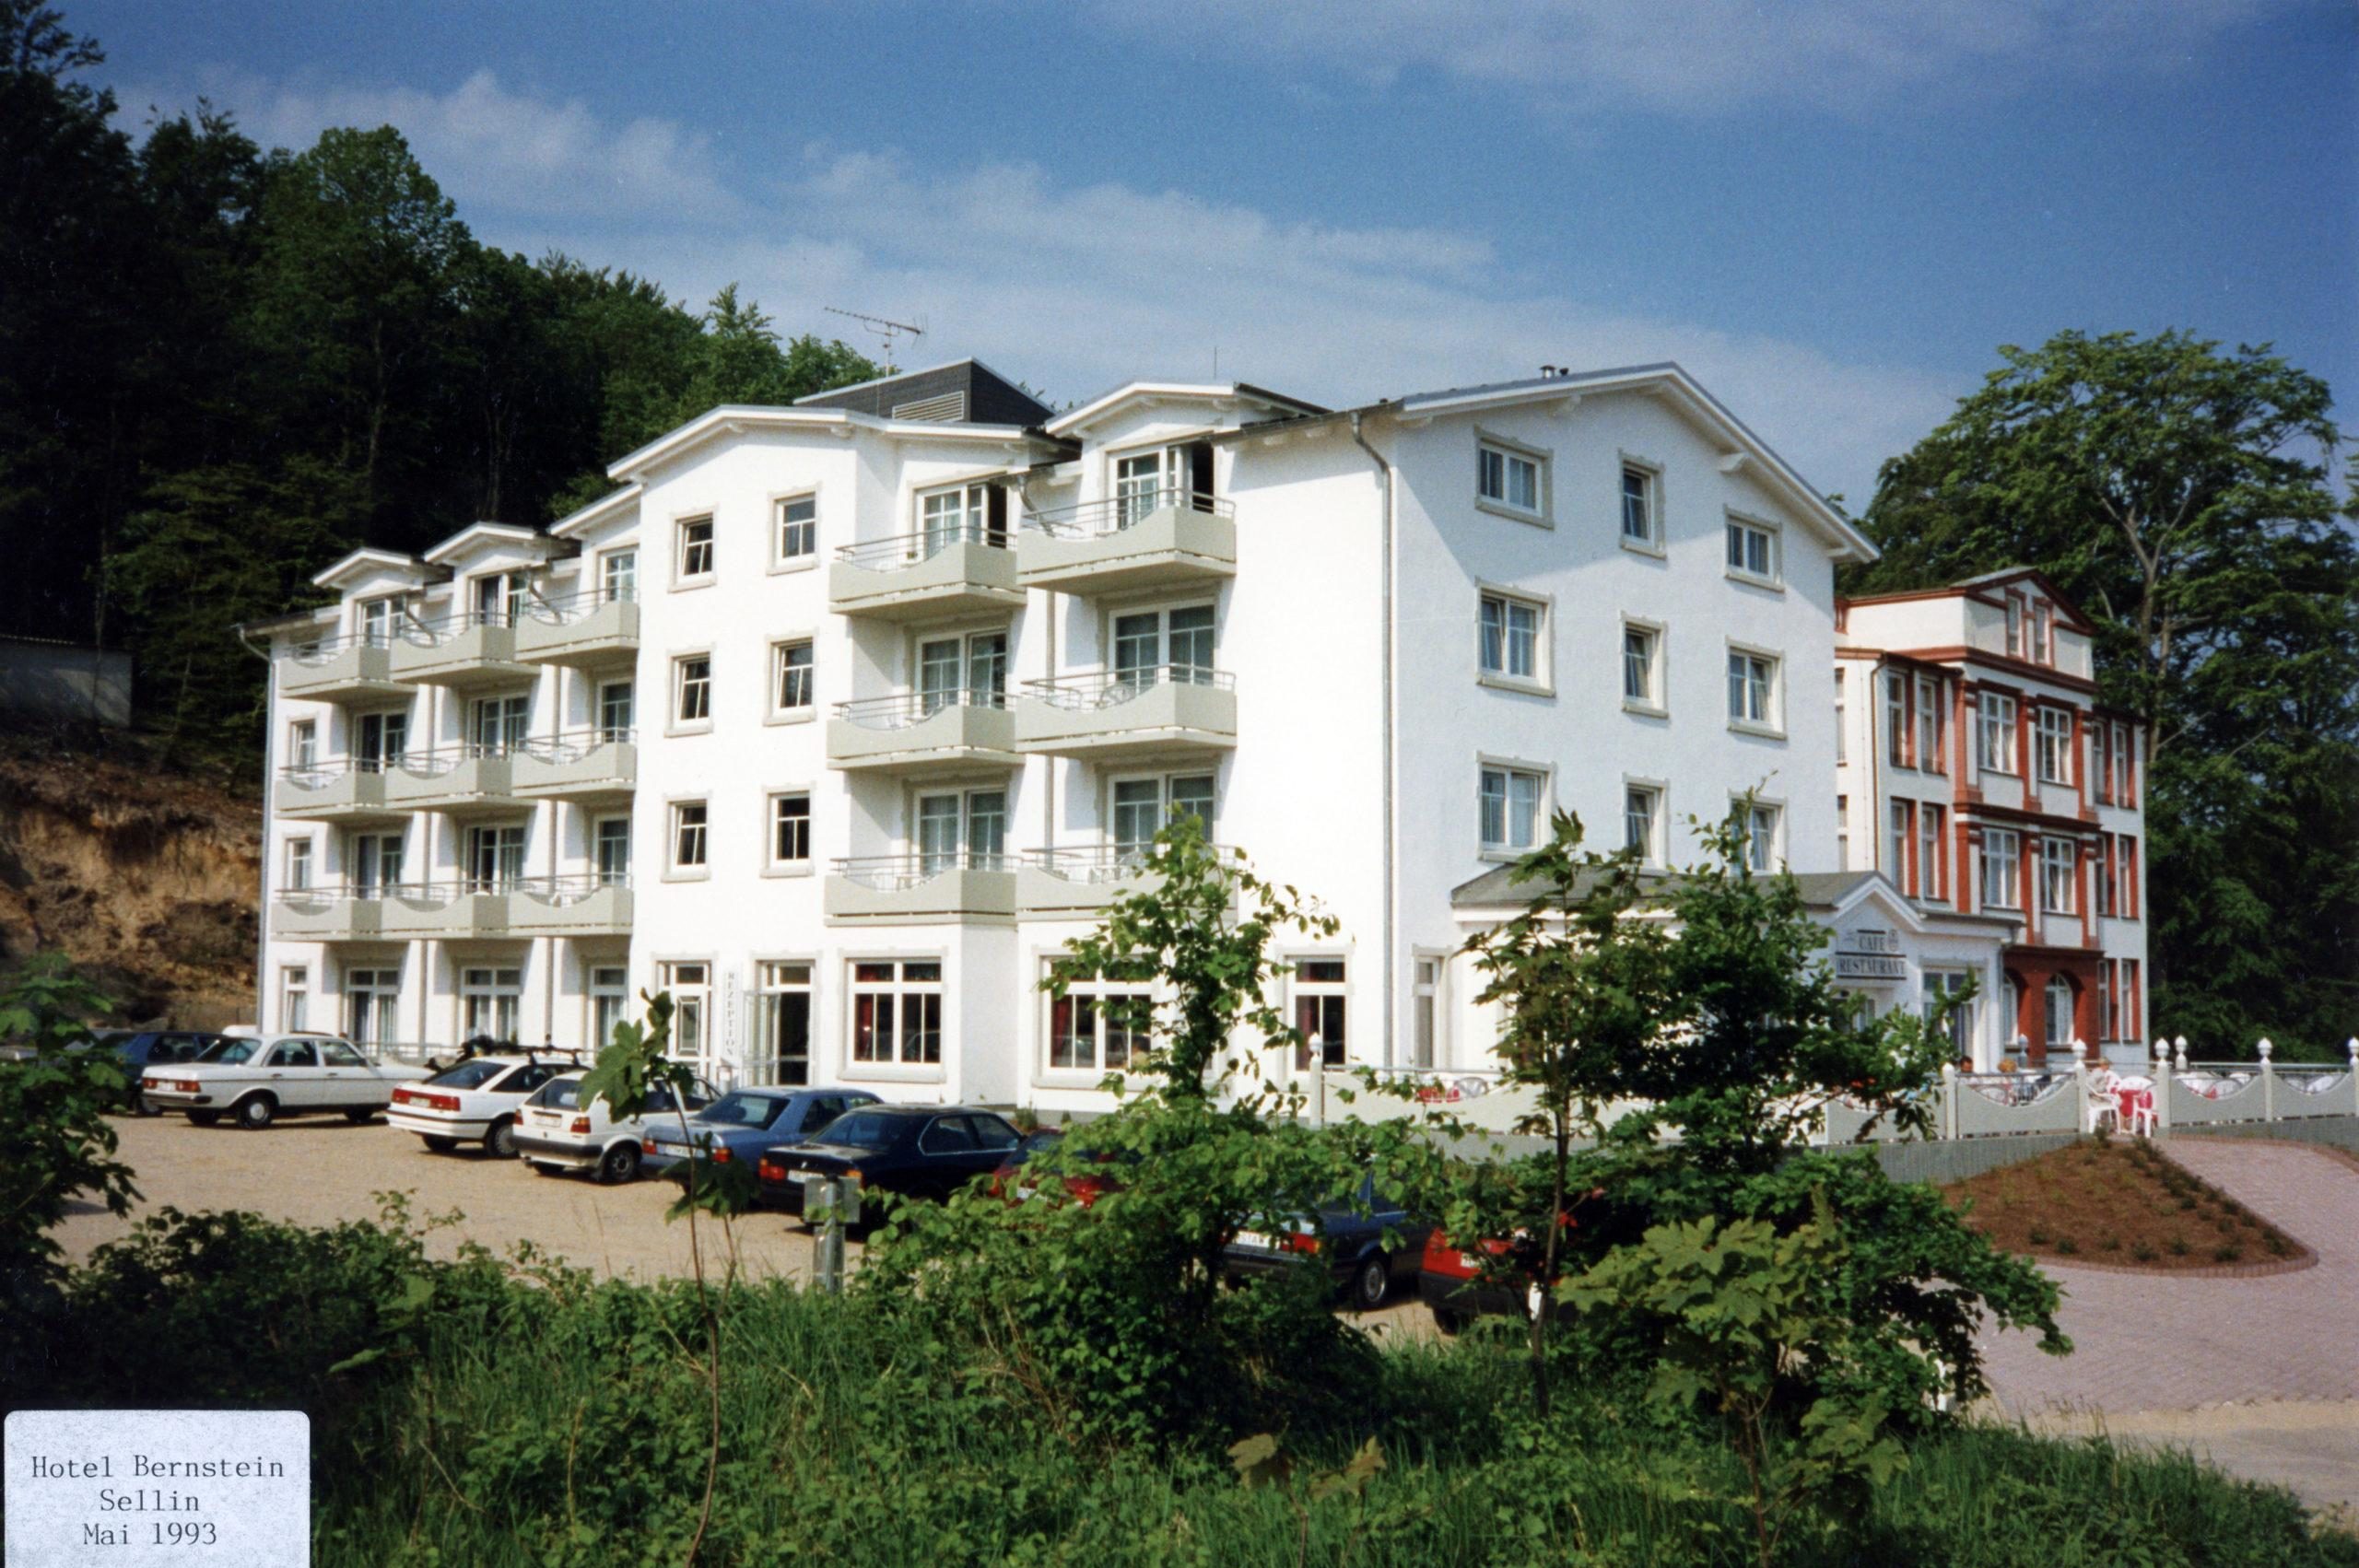 Das Hotel Bernstein im Jahr der Eröffnung 1993.